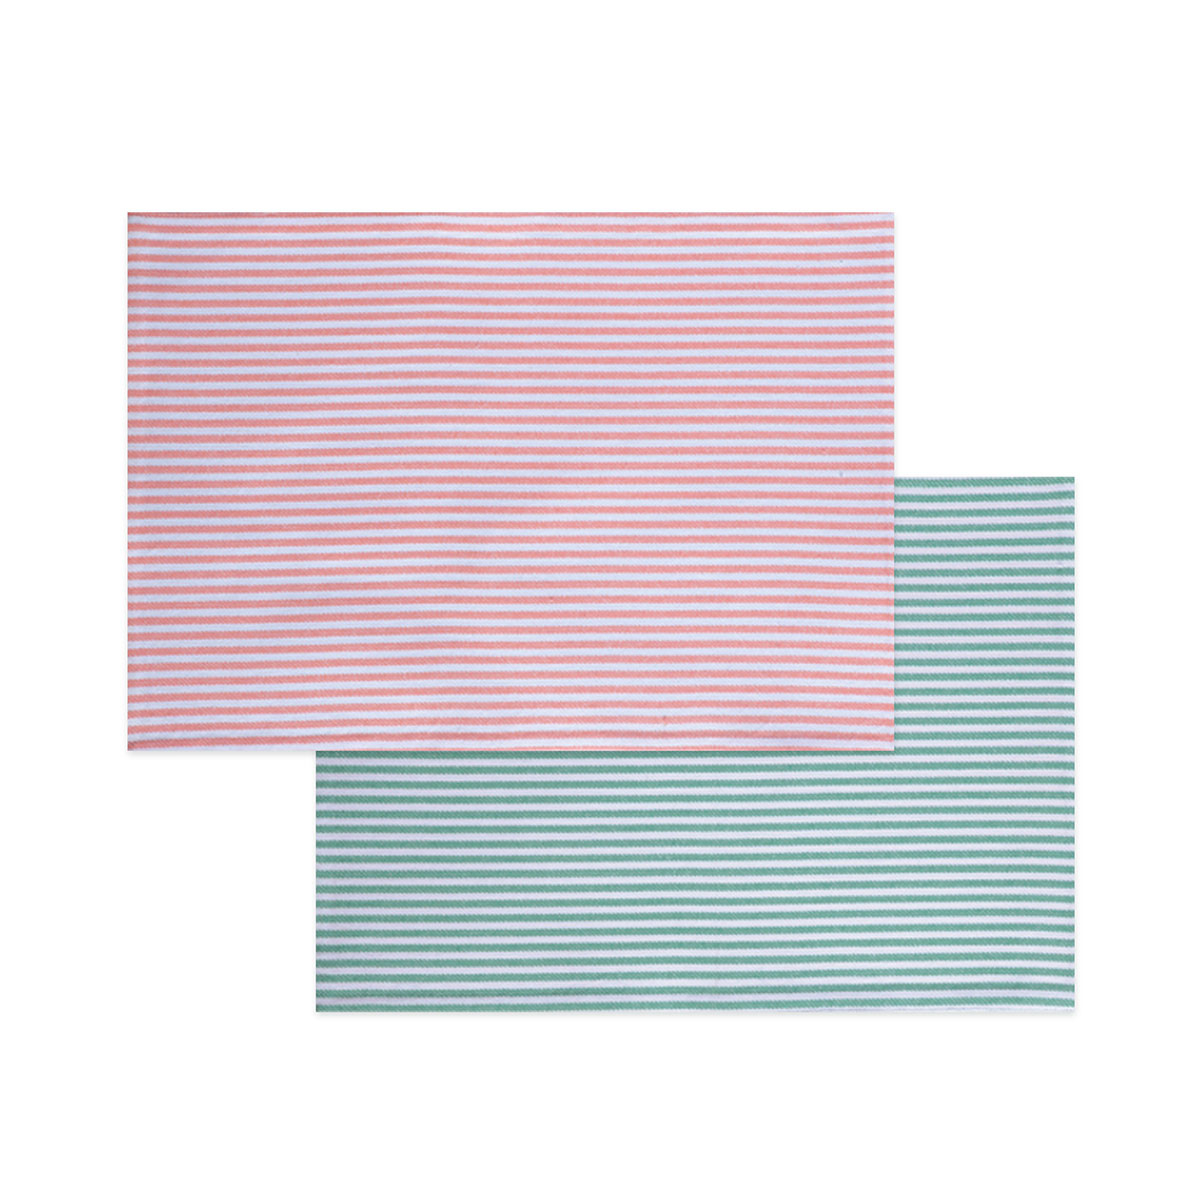 Σουπλά 2 Όψεων (33×48) Nef-Nef Viral Peach – Mint